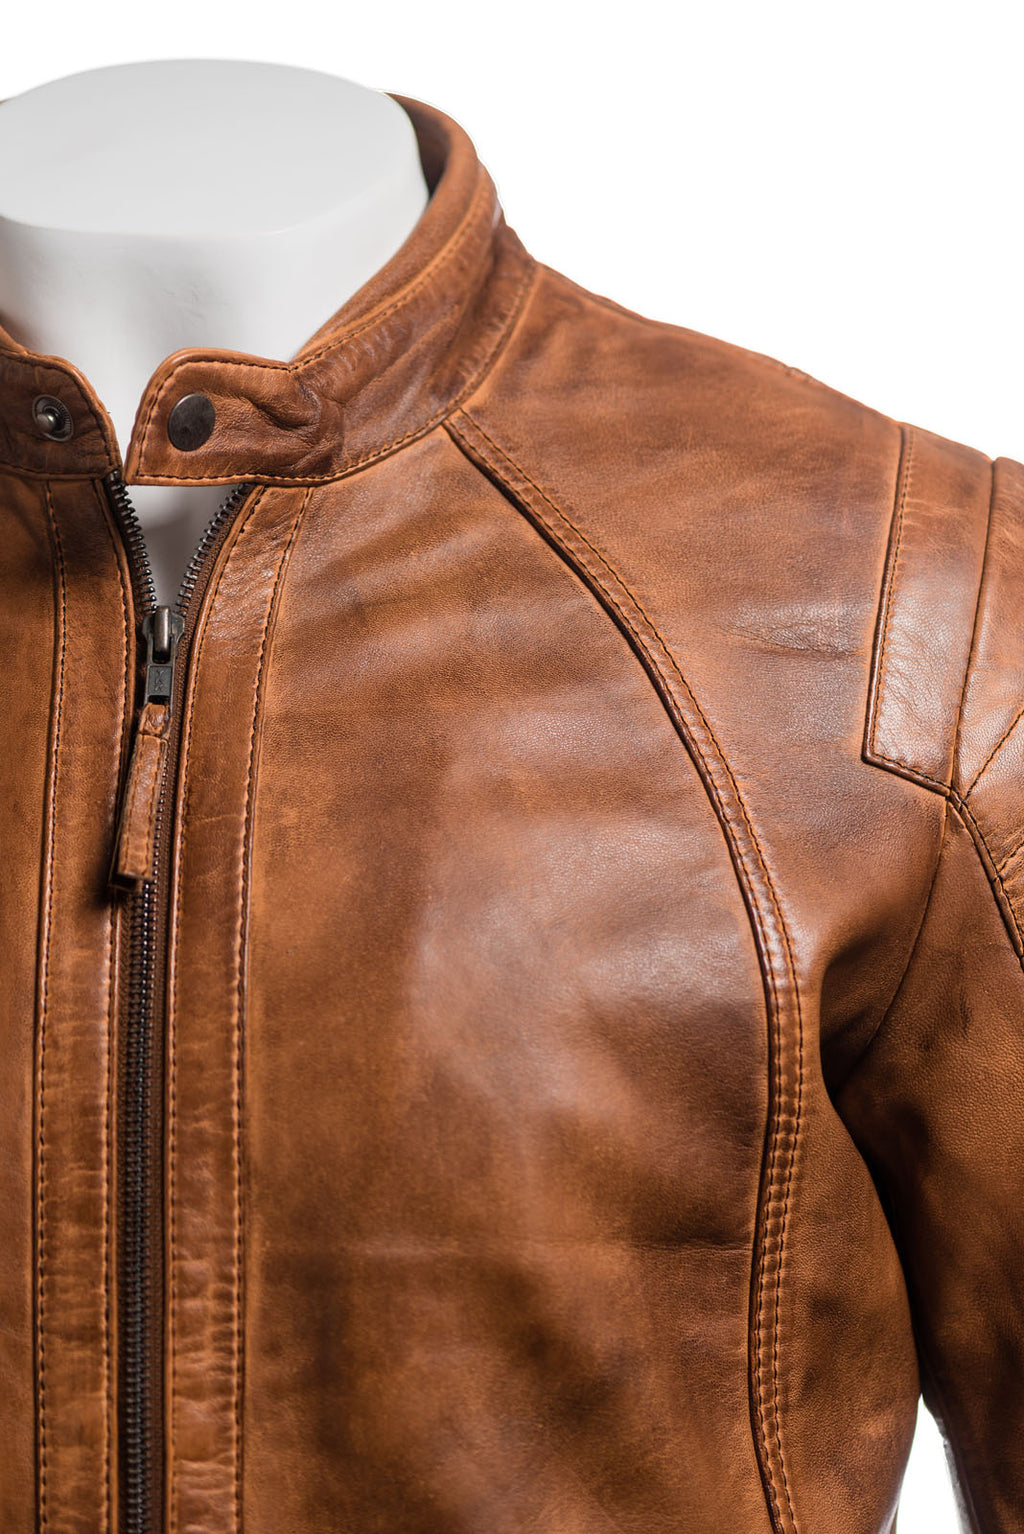 Men's Vintage Biker Style Leather Jacket With Shoulder Detail: Alessandro